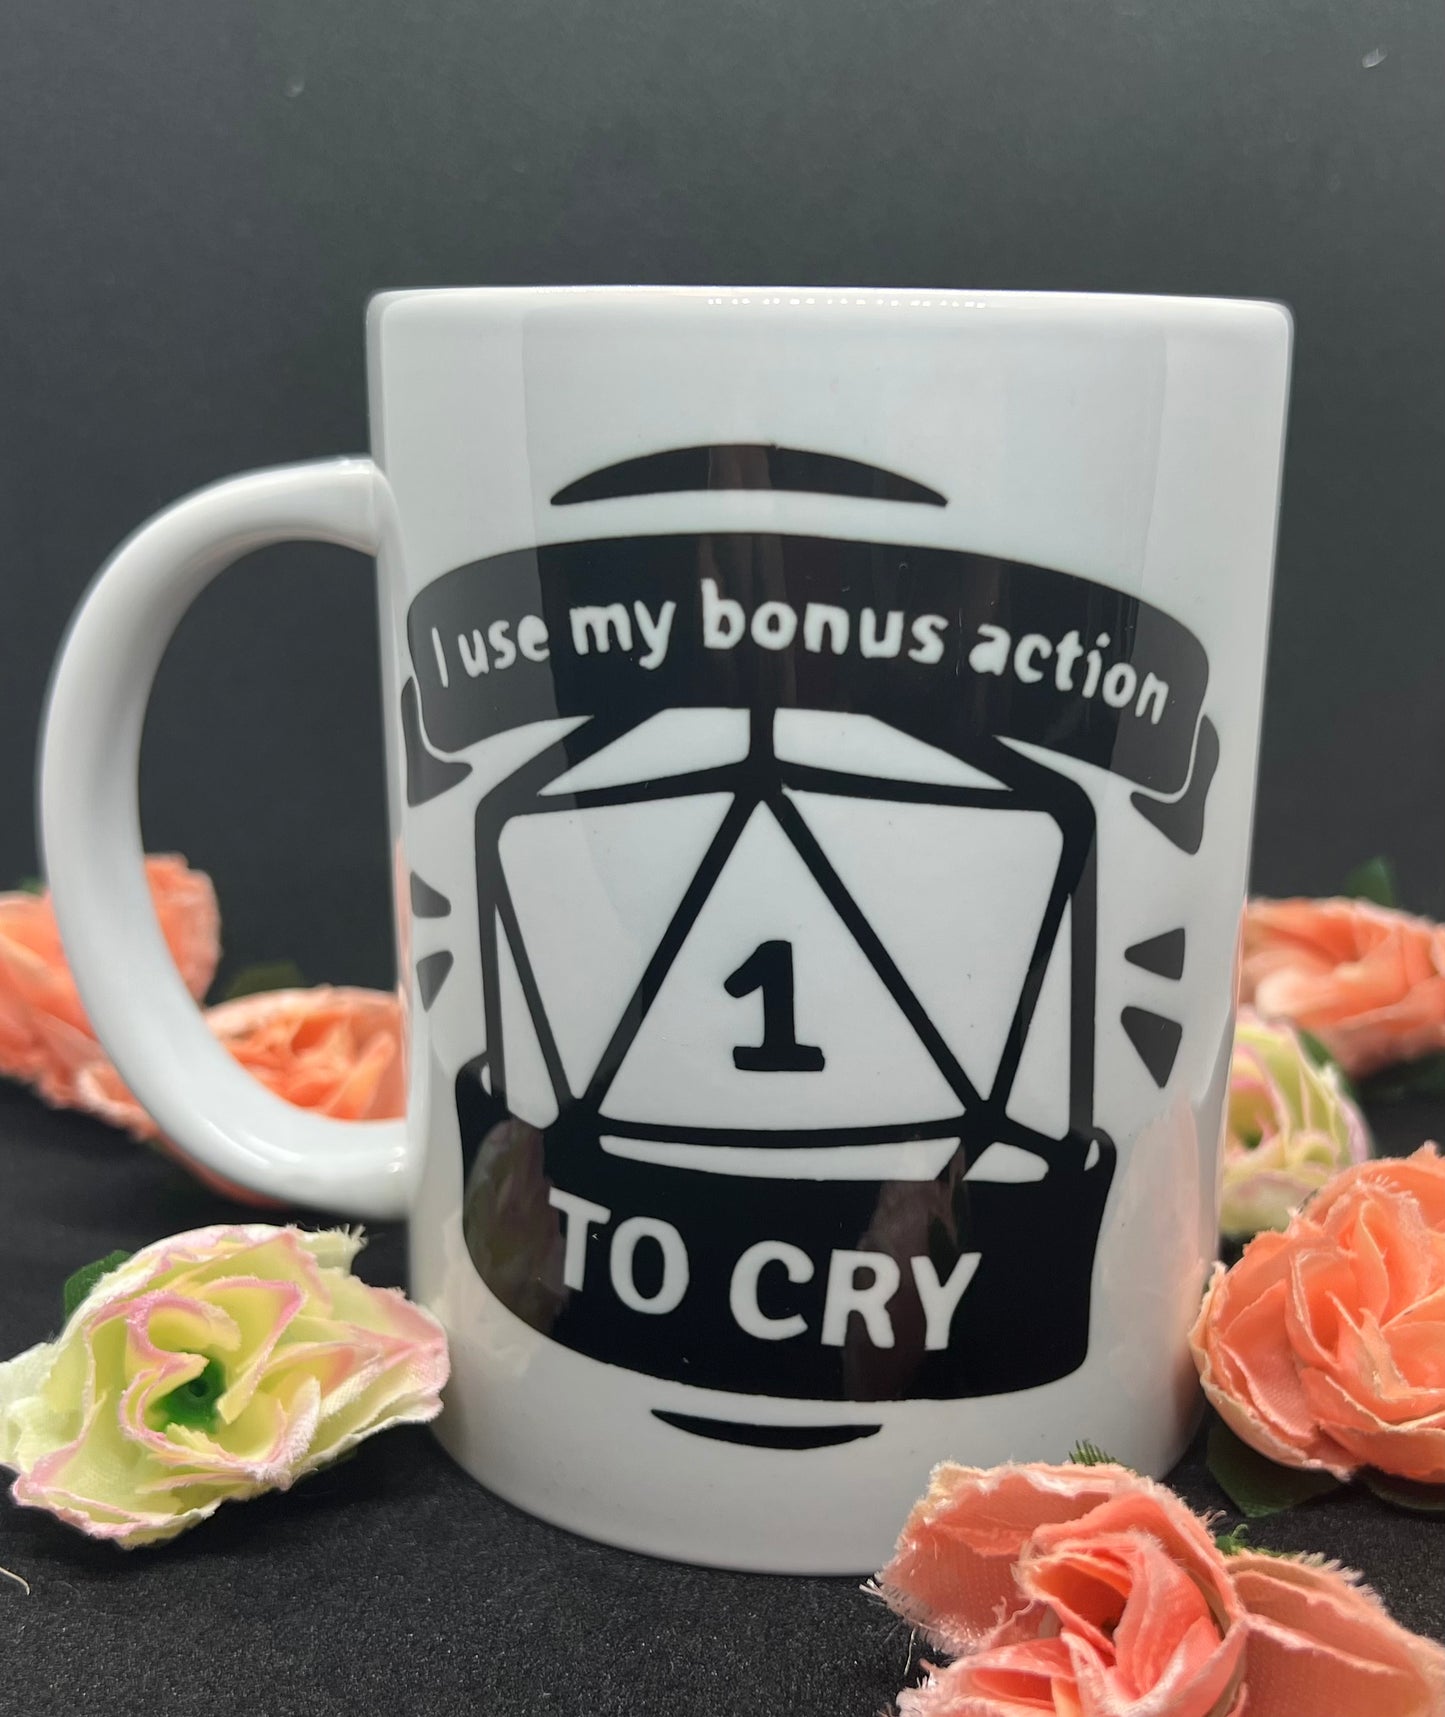 DND Mug - ""I Use My Bonus Action To Cry"", Dungeons and Dragons Mug for DM and Players, Funny Ceramic Mug Gift for Tea and Coffee